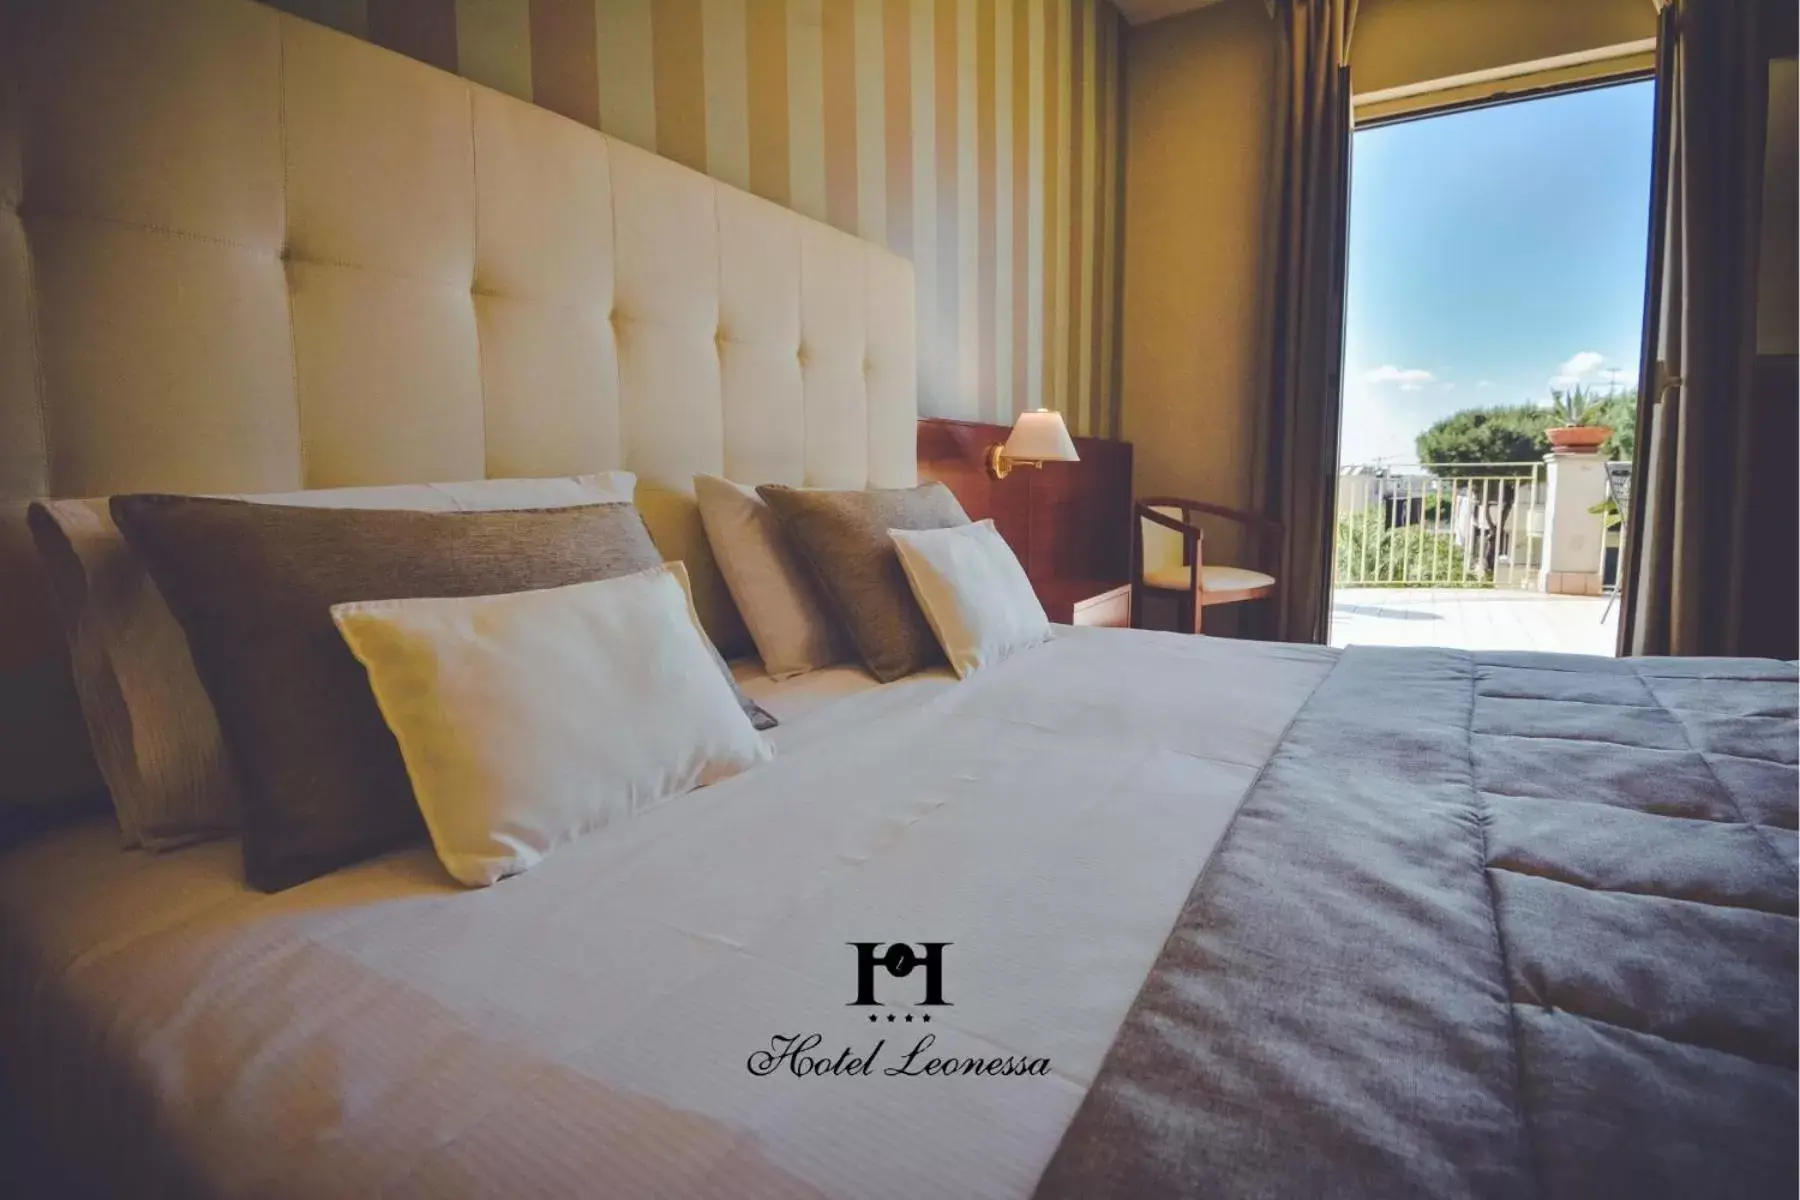 Bed in Hotel Leonessa